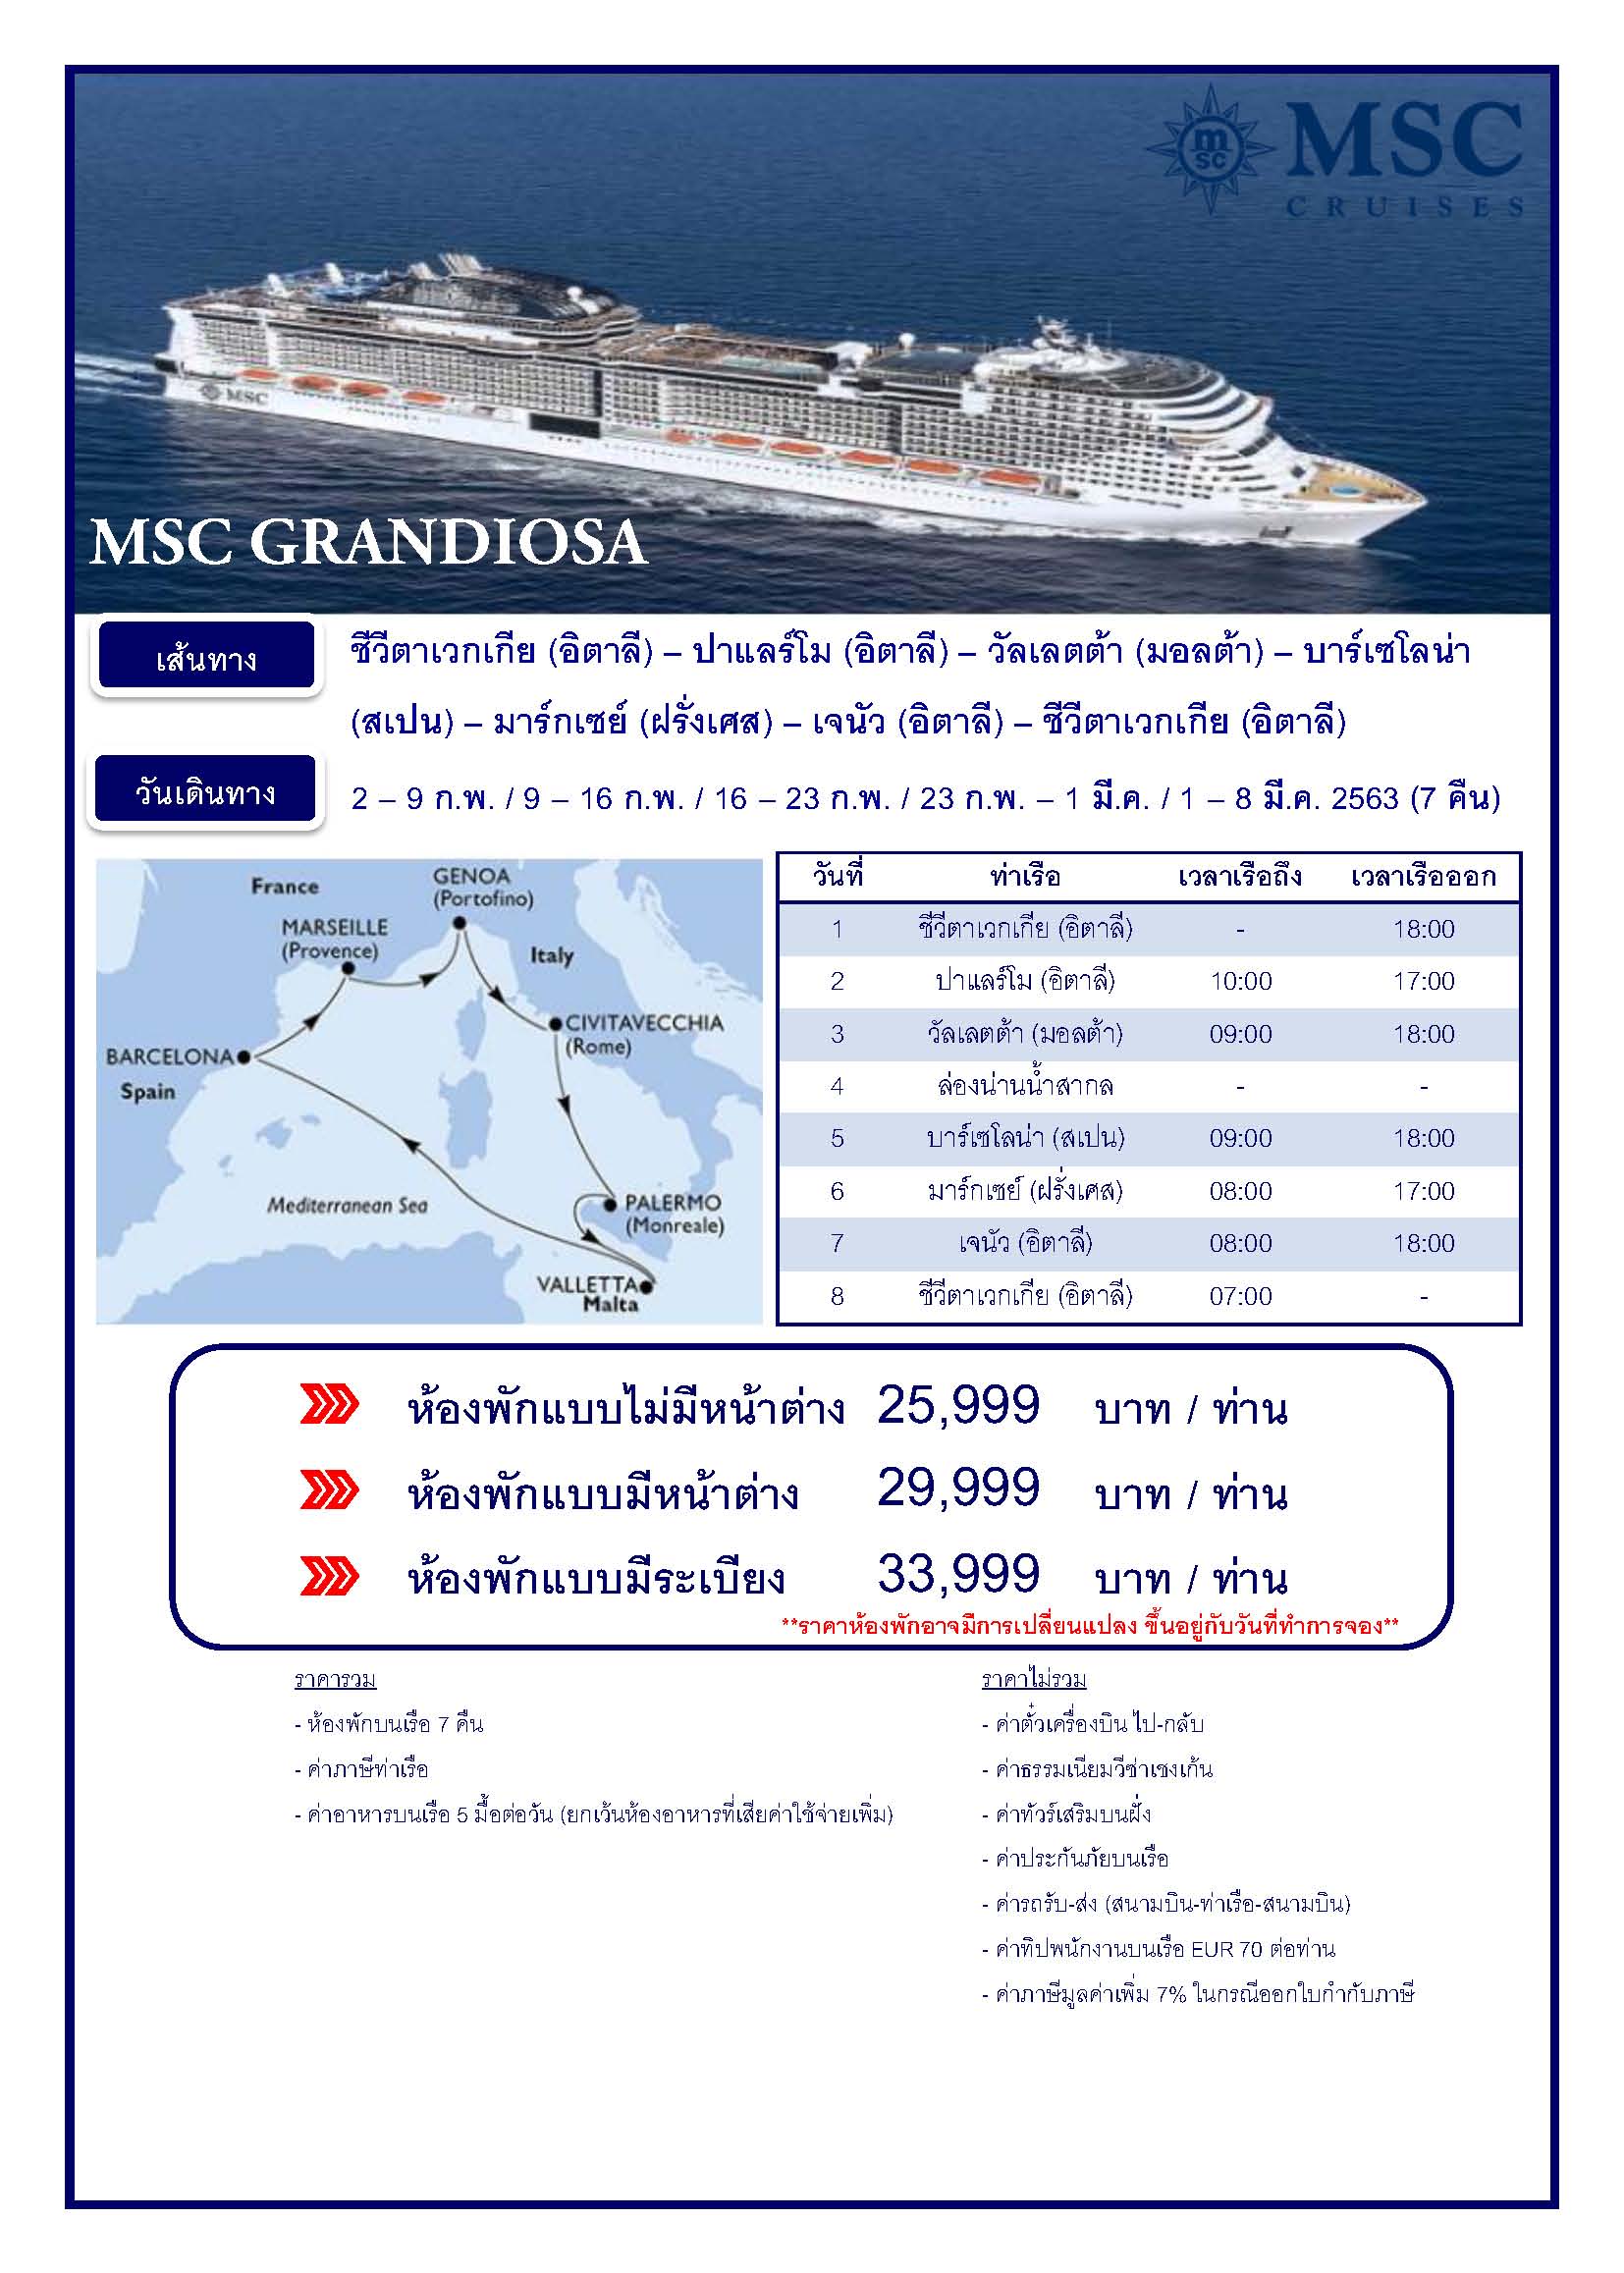 ทัวร์ล่องเรือ-MSC-GRANDIOSA-7N-(MAR20)(GRIJH-0202)